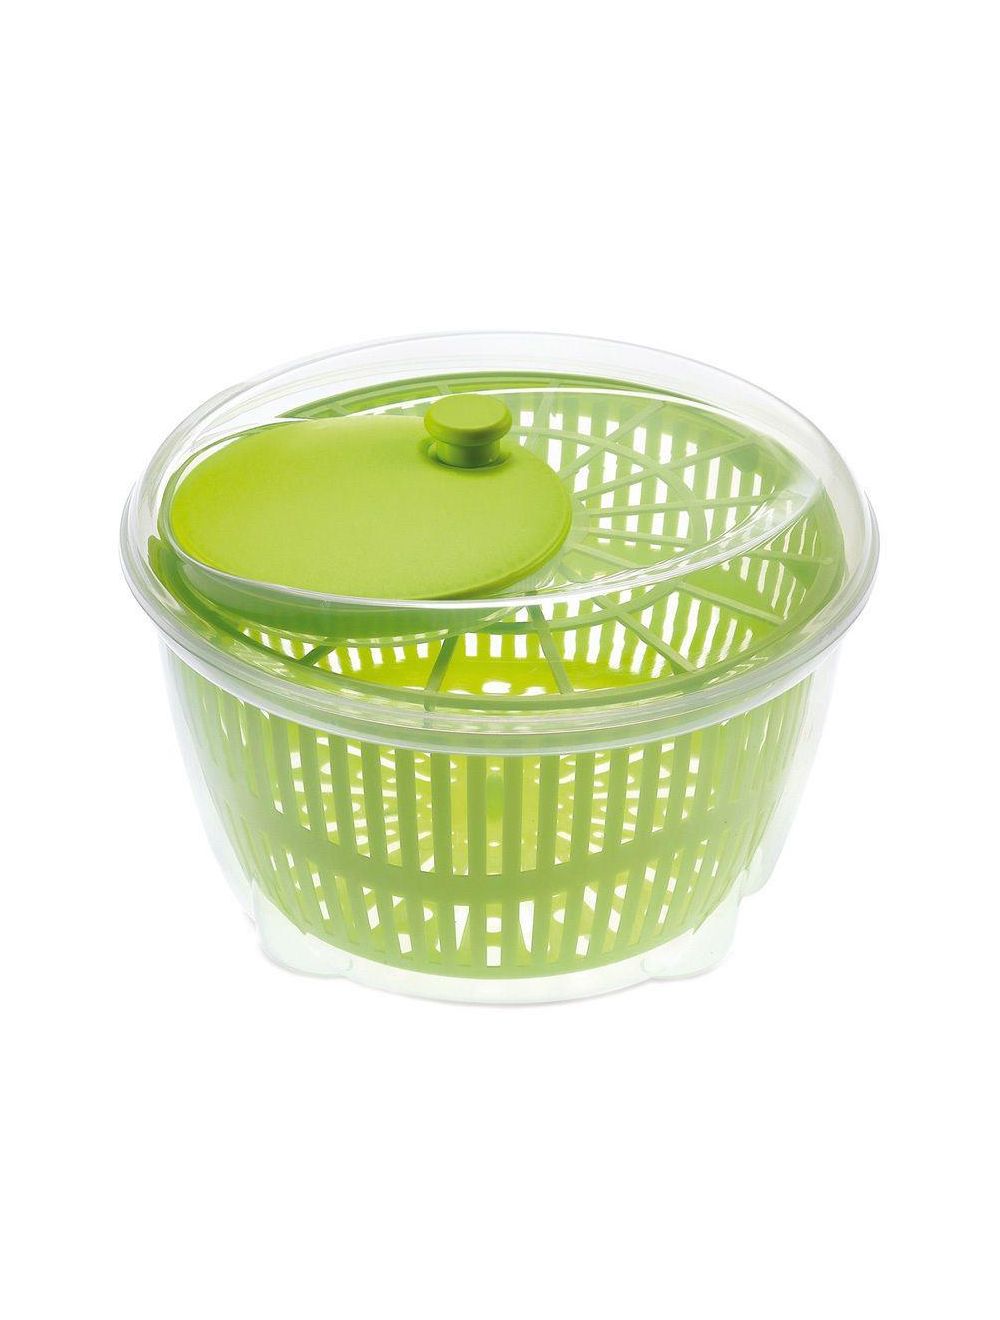 Unibos Salad Spinner Vegetable Veg Leaf Dryer Drainer Colander Plastic Bowl Large 